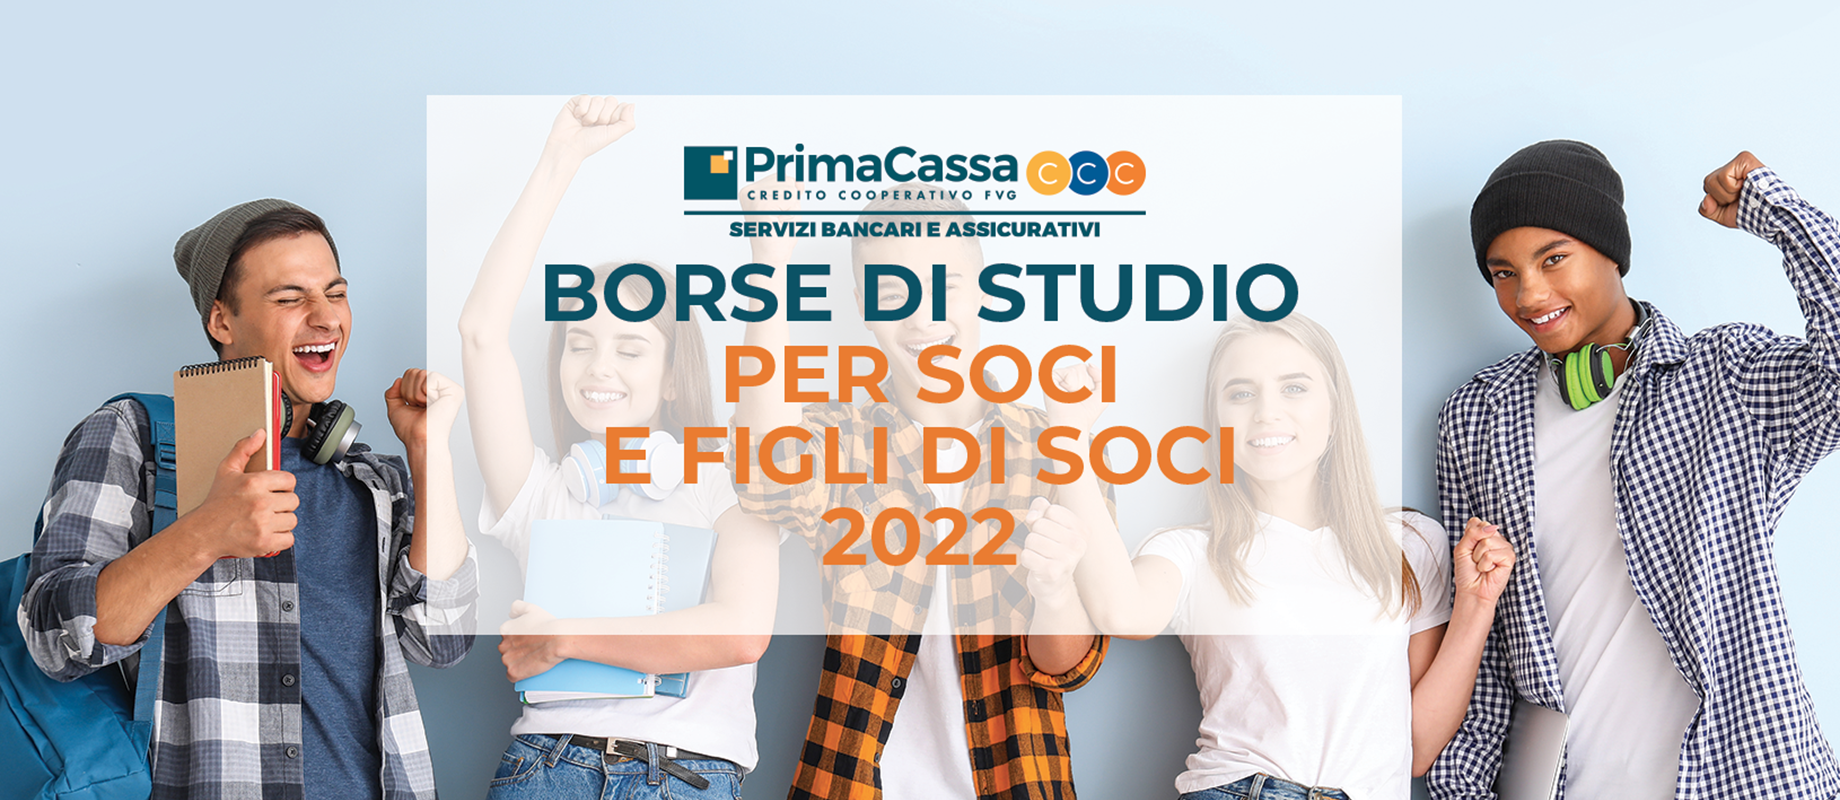 Borse di Studio PrimaCassa - Bando 2022 